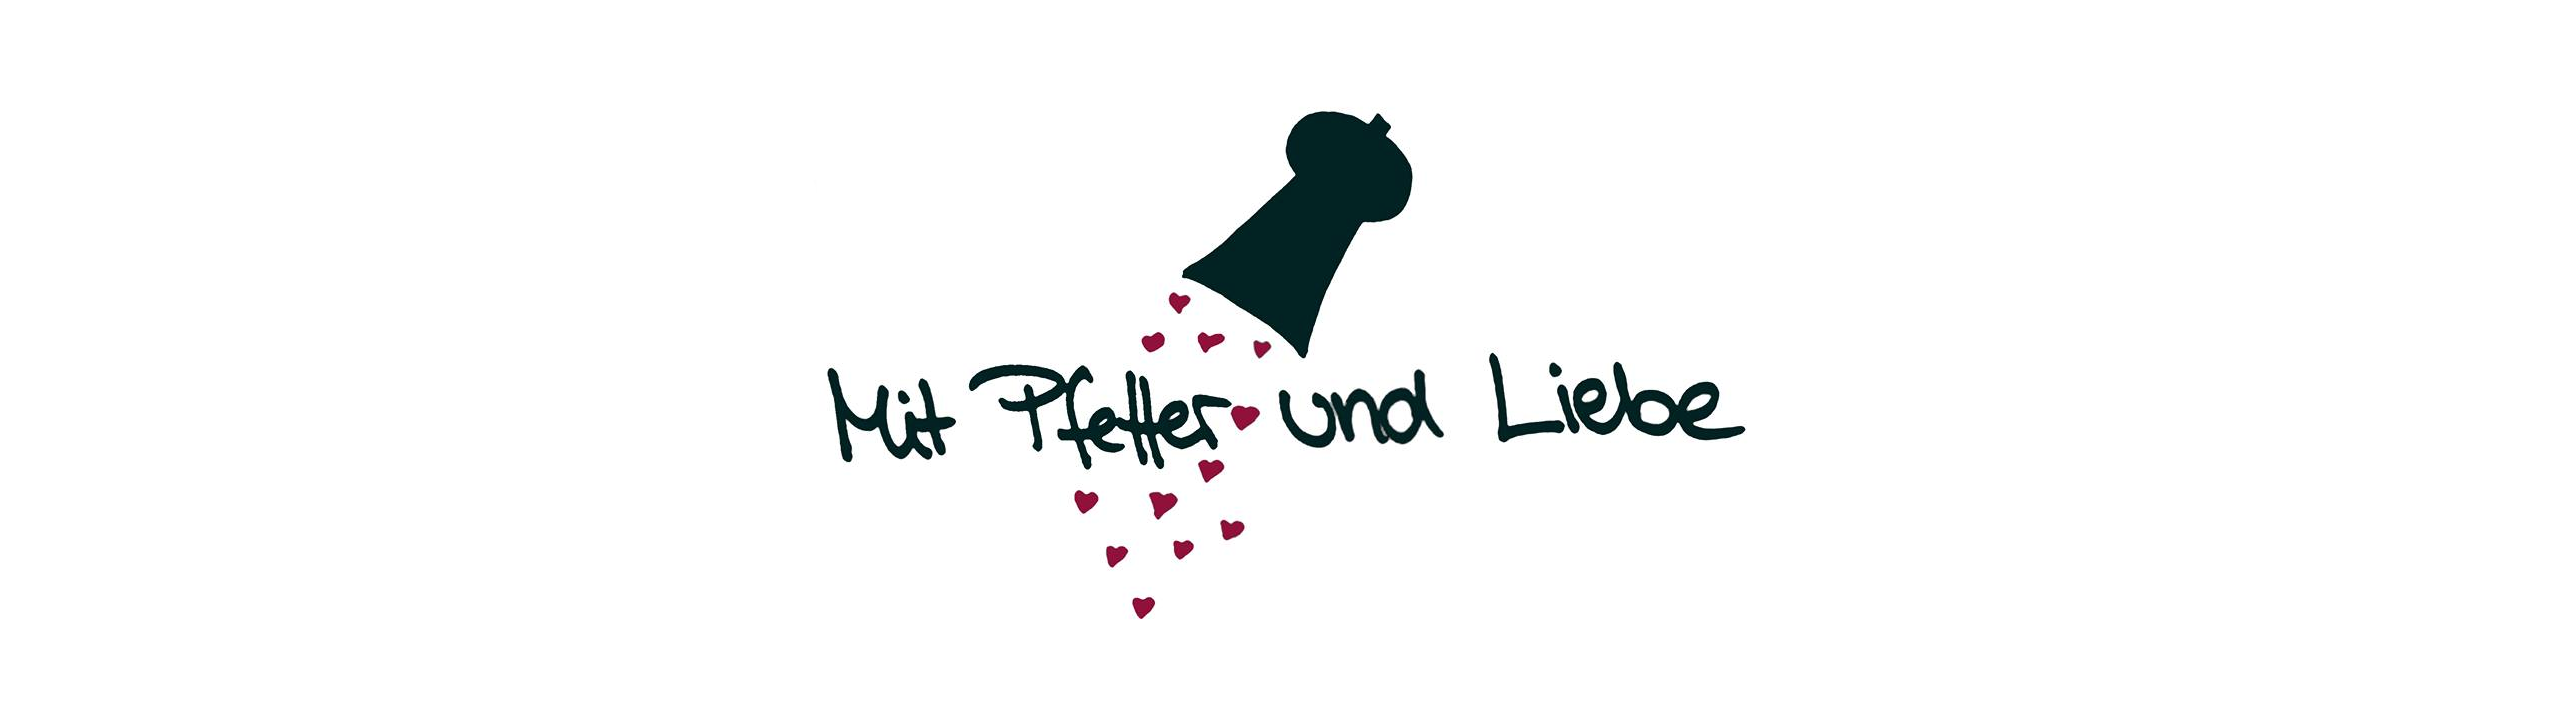 Mit Pfeffer & Liebe